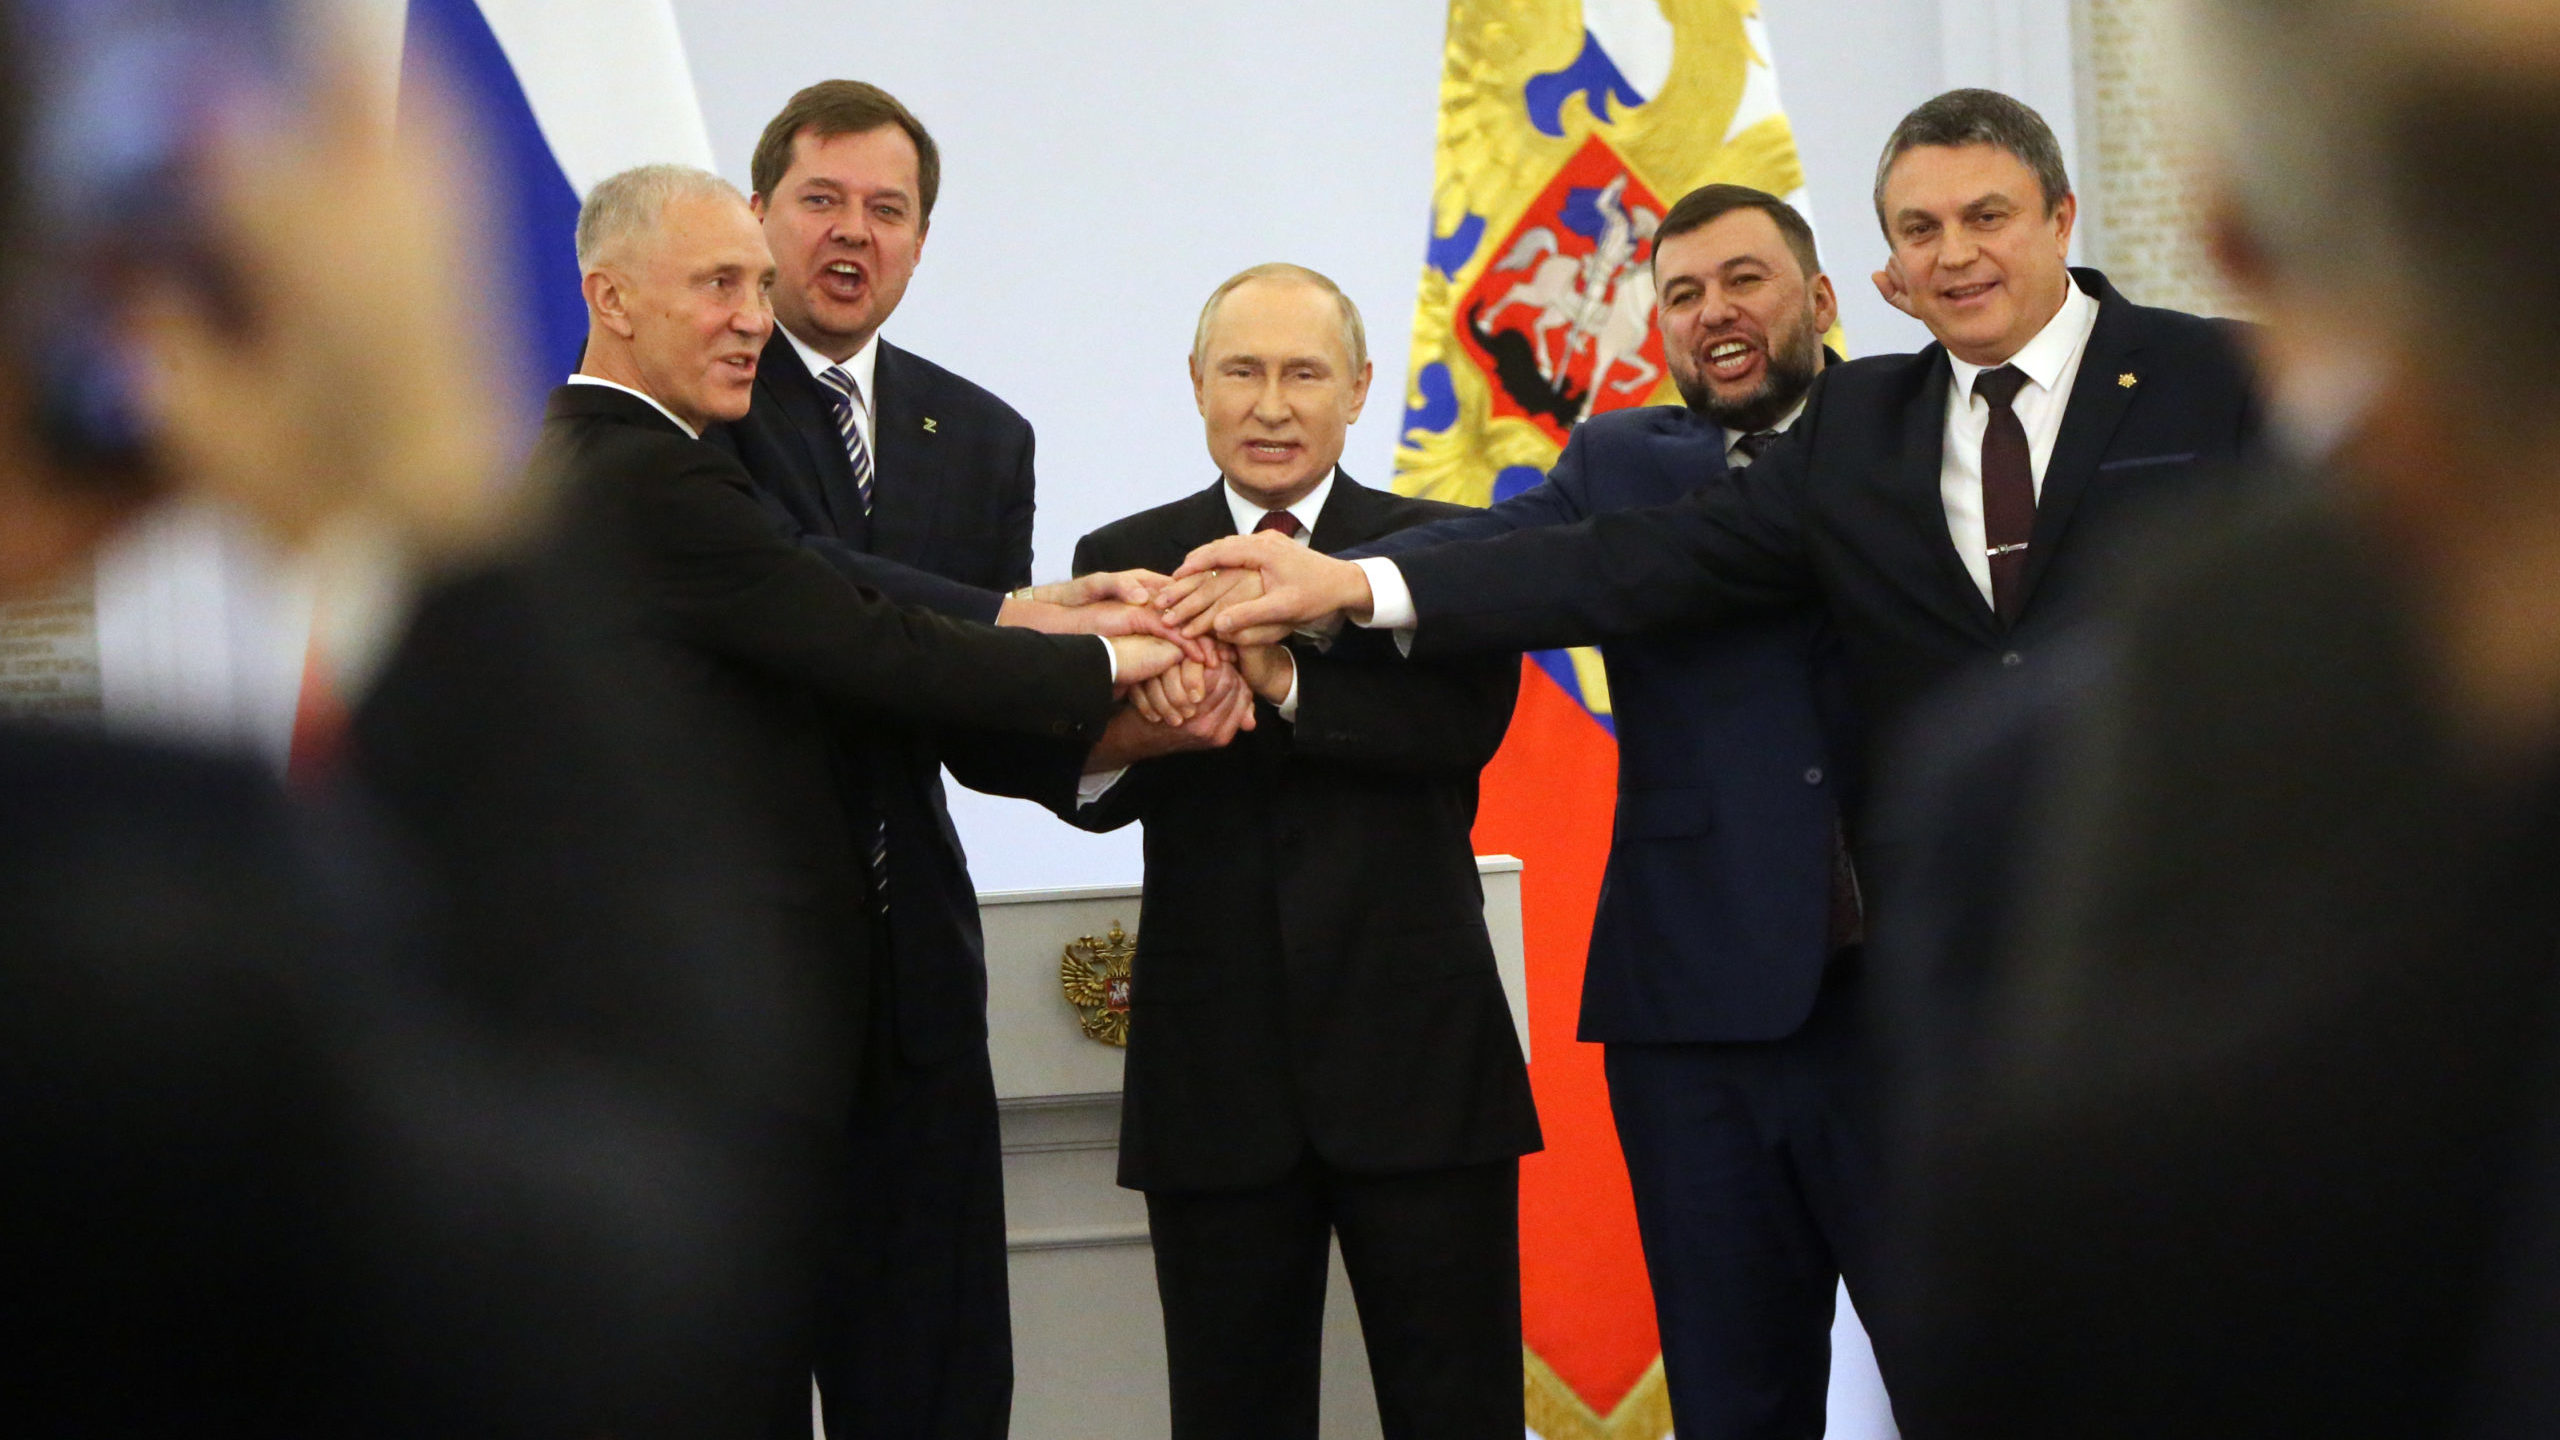 Putin osceno, colpisce il tono irridente con il quale respinge la pace chiesta da Papa Francesco